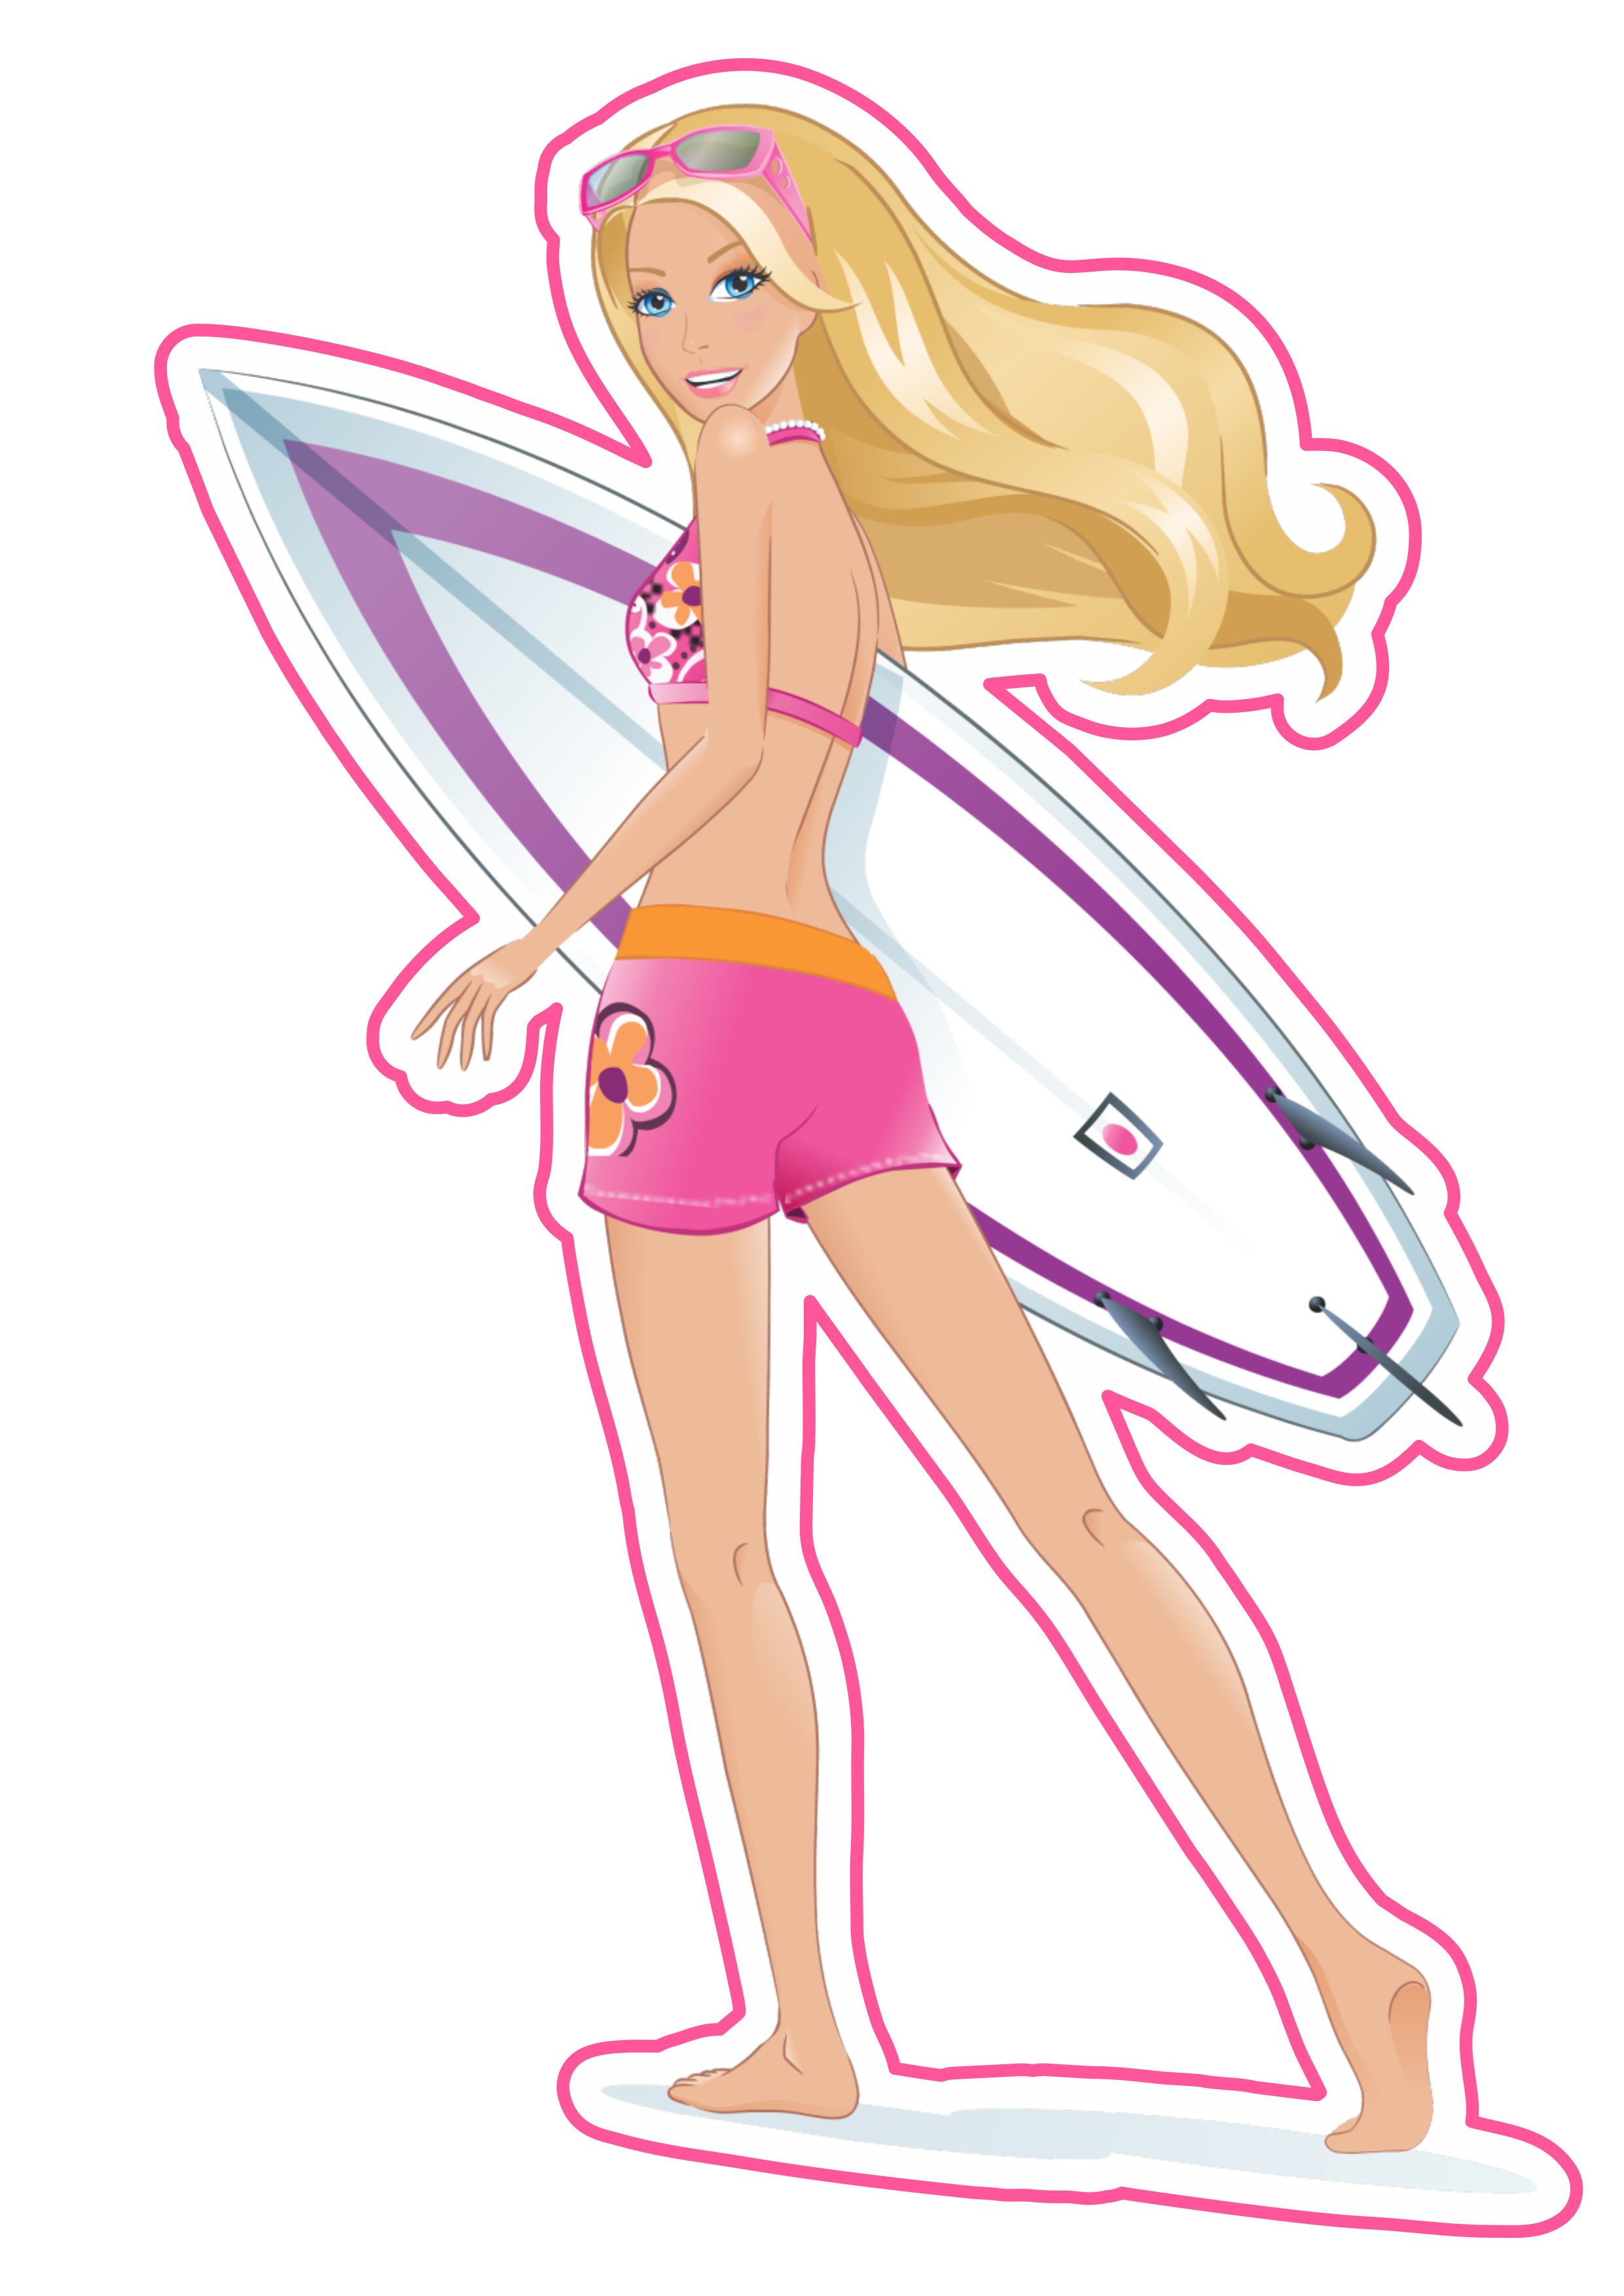 Boneca Barbie surfista imagem fundo transparente com contorno ilustration png